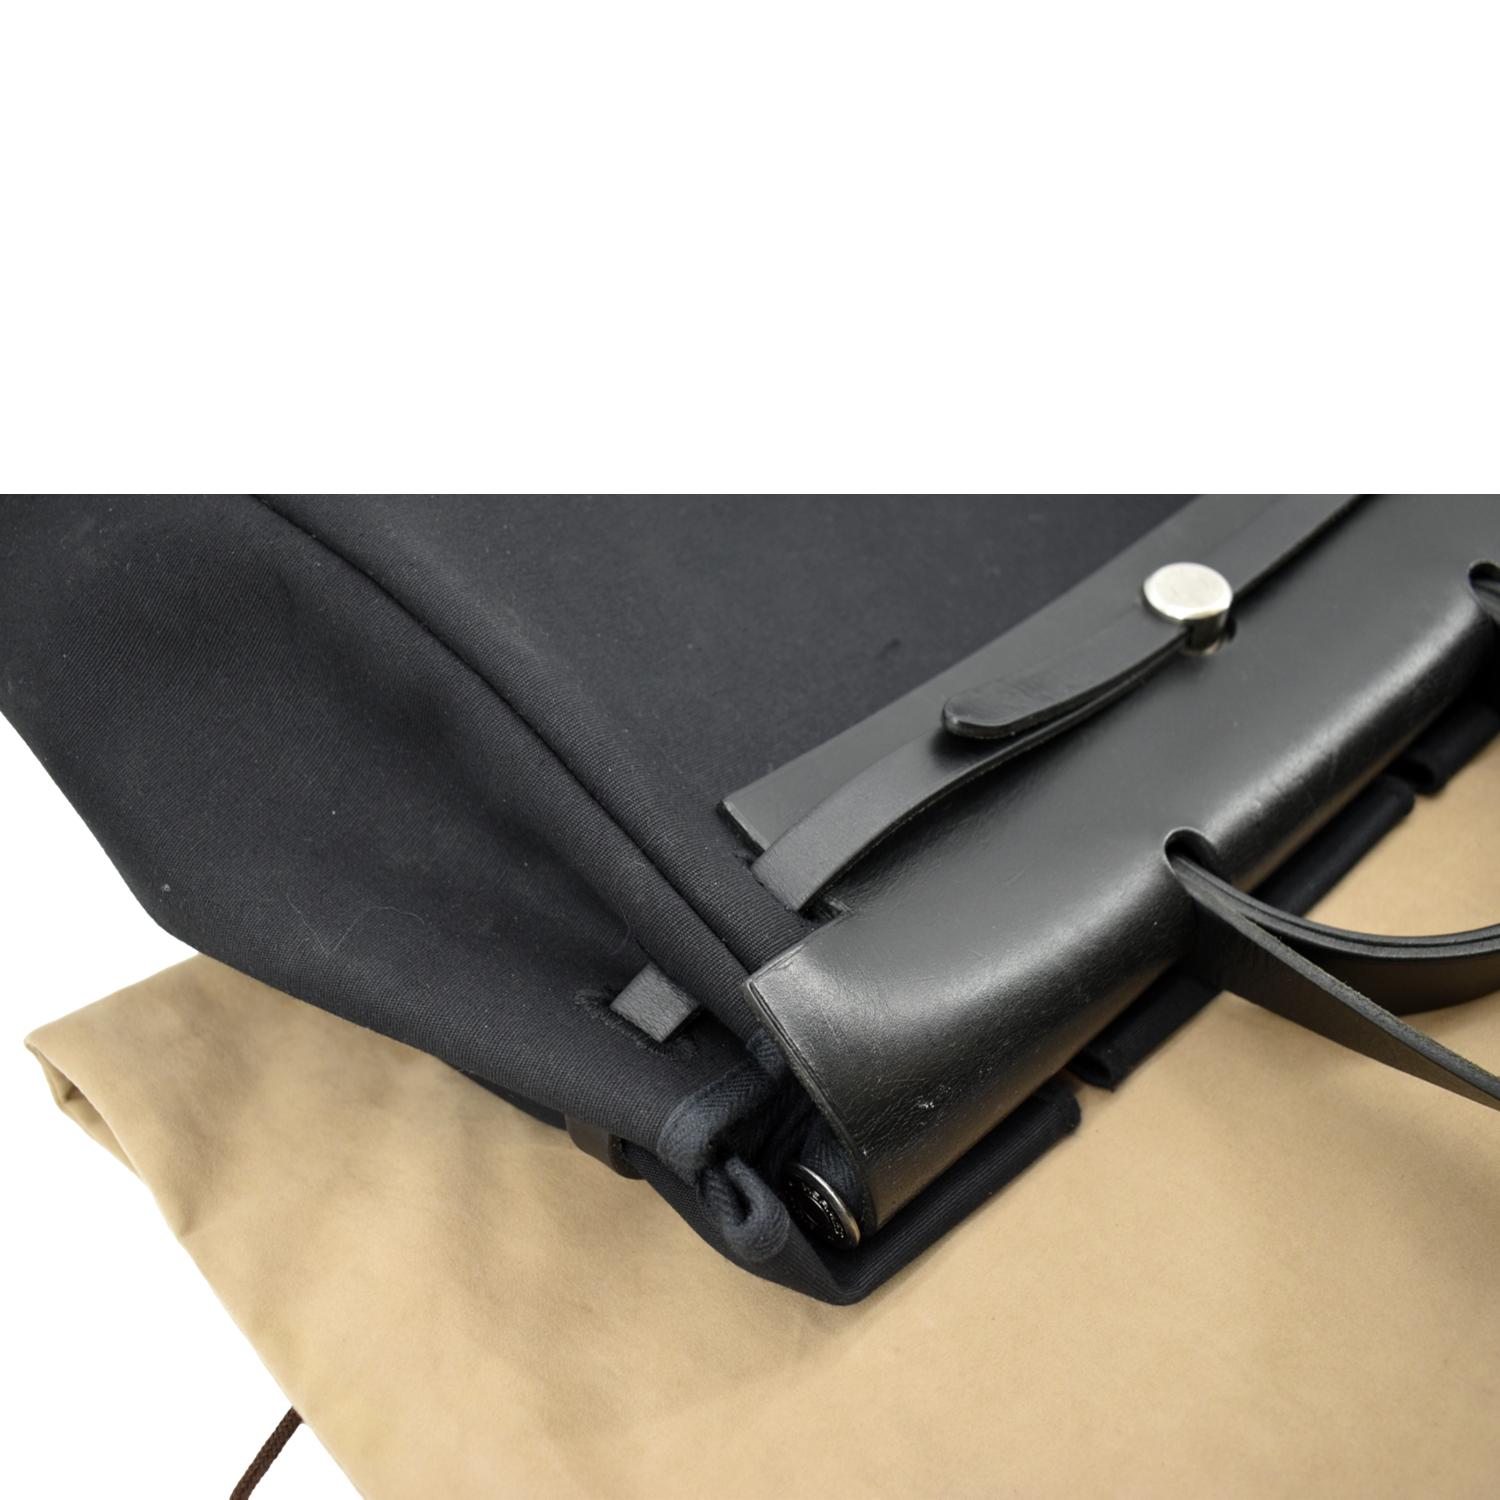 Hermes Herbag Canvas Leather Shoulder Bag Black